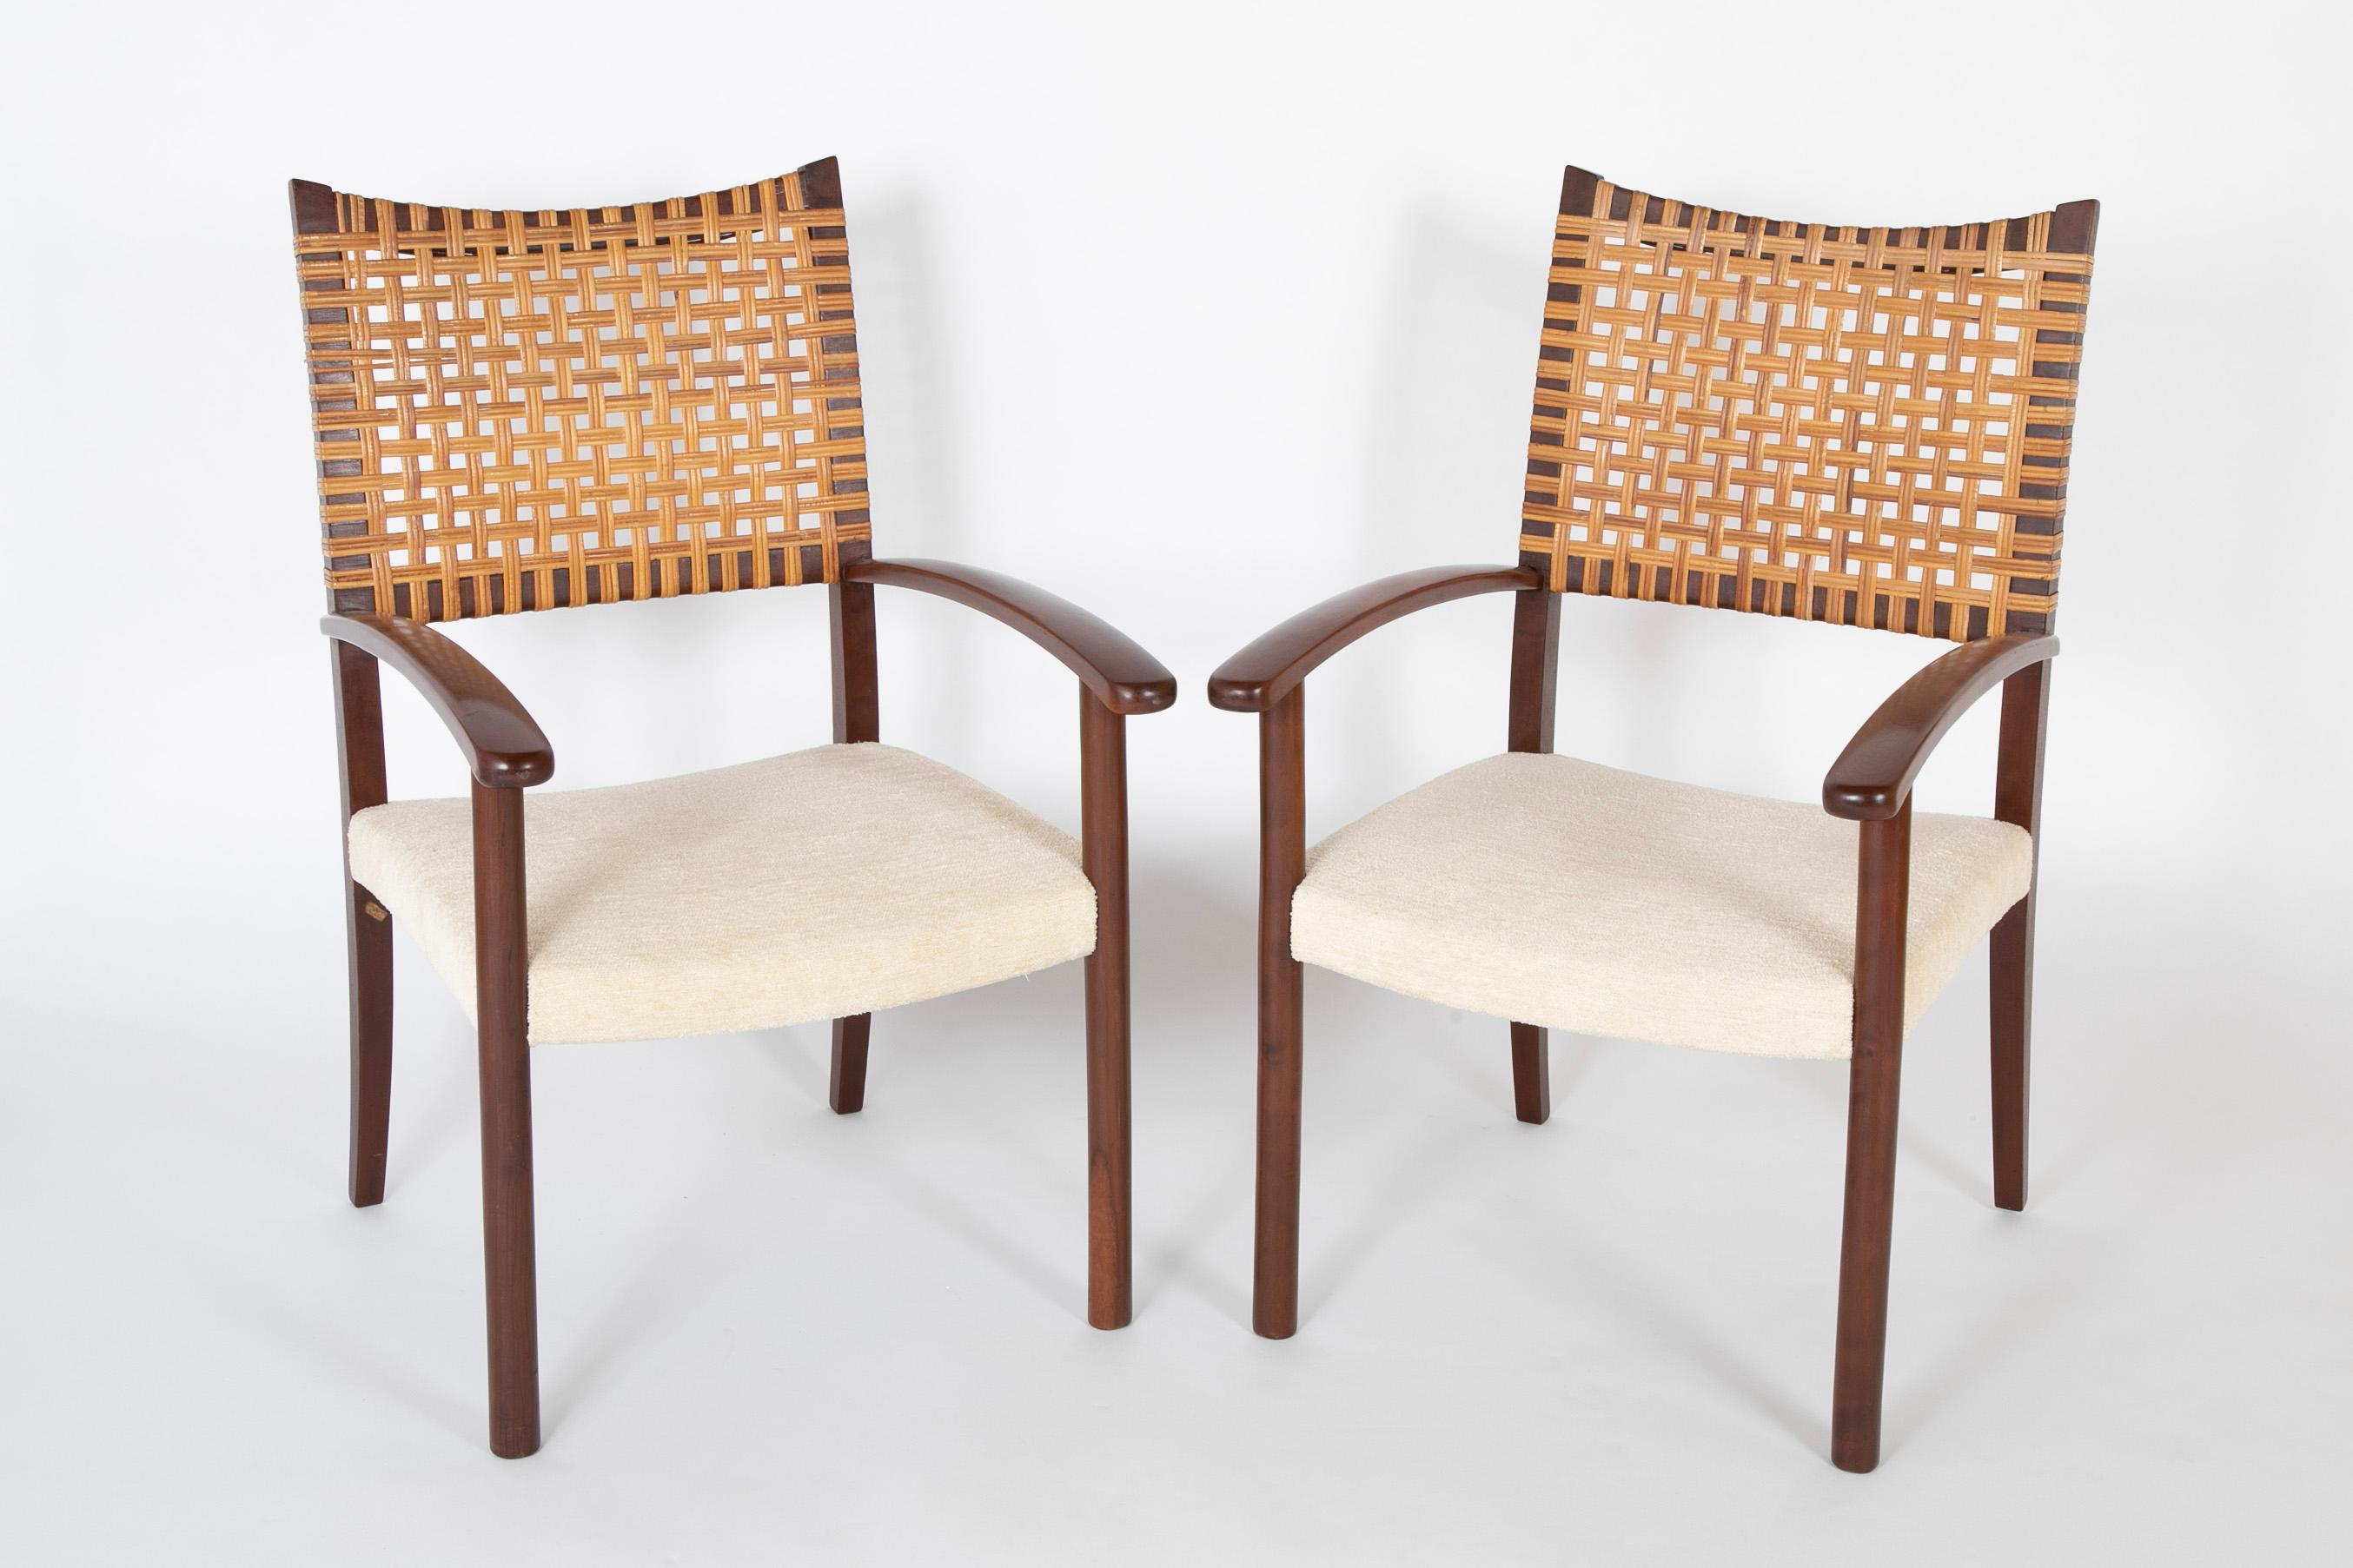 Une paire remarquable de fauteuils ouverts à dossier canné.  Conçu au Brésil par Adolfo Foltas